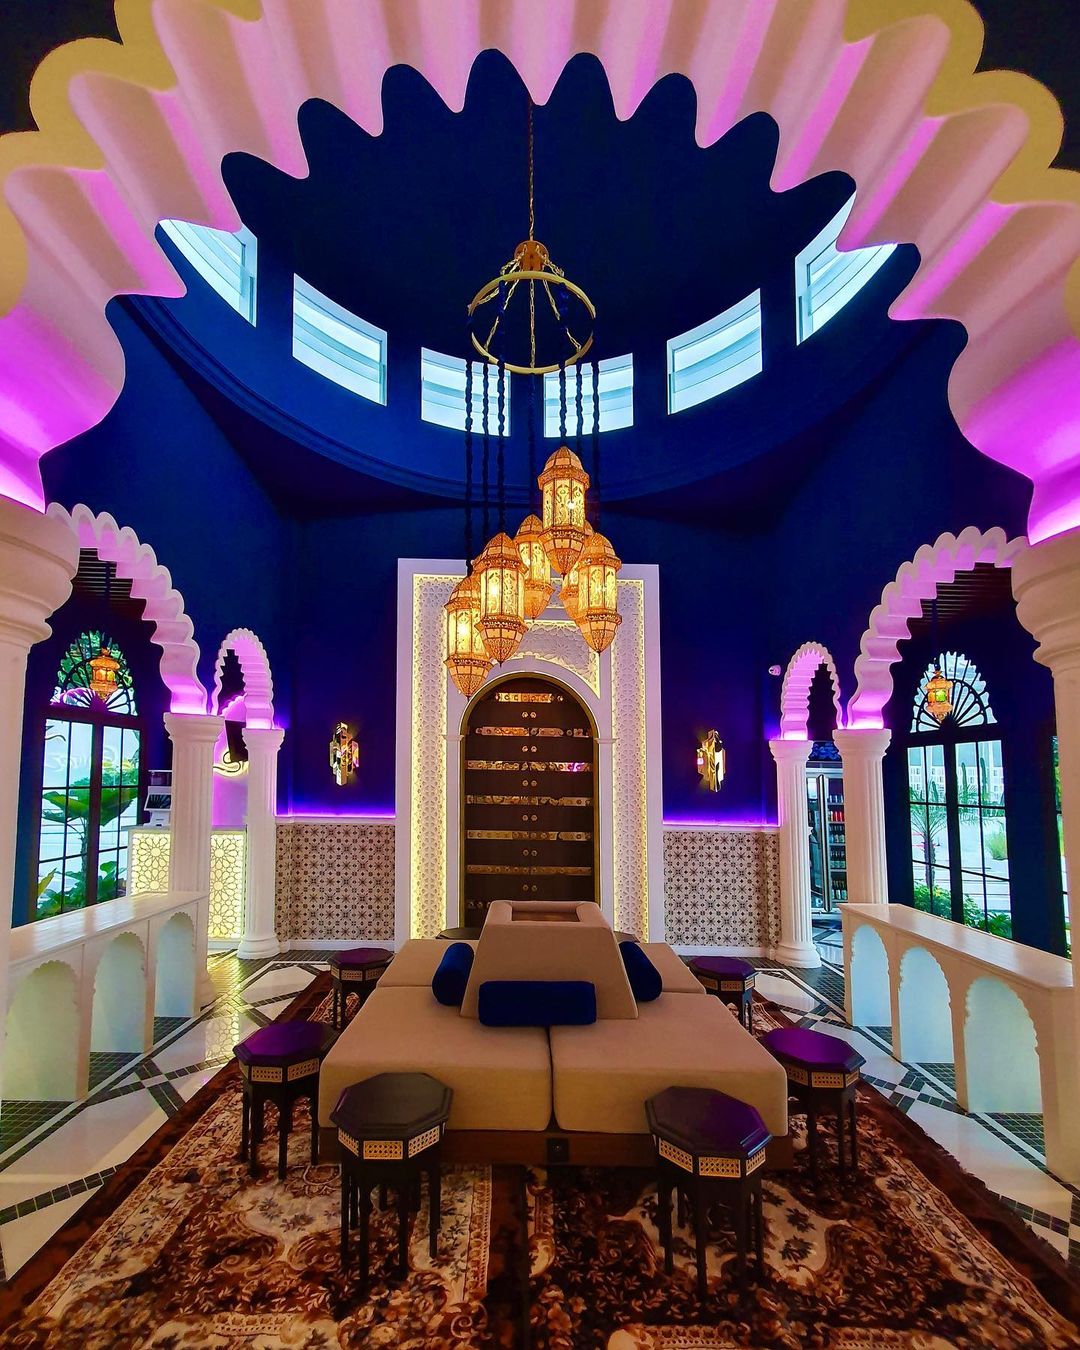 Review Shiraz Skyview Bar Semarang Image From @idkv_interior